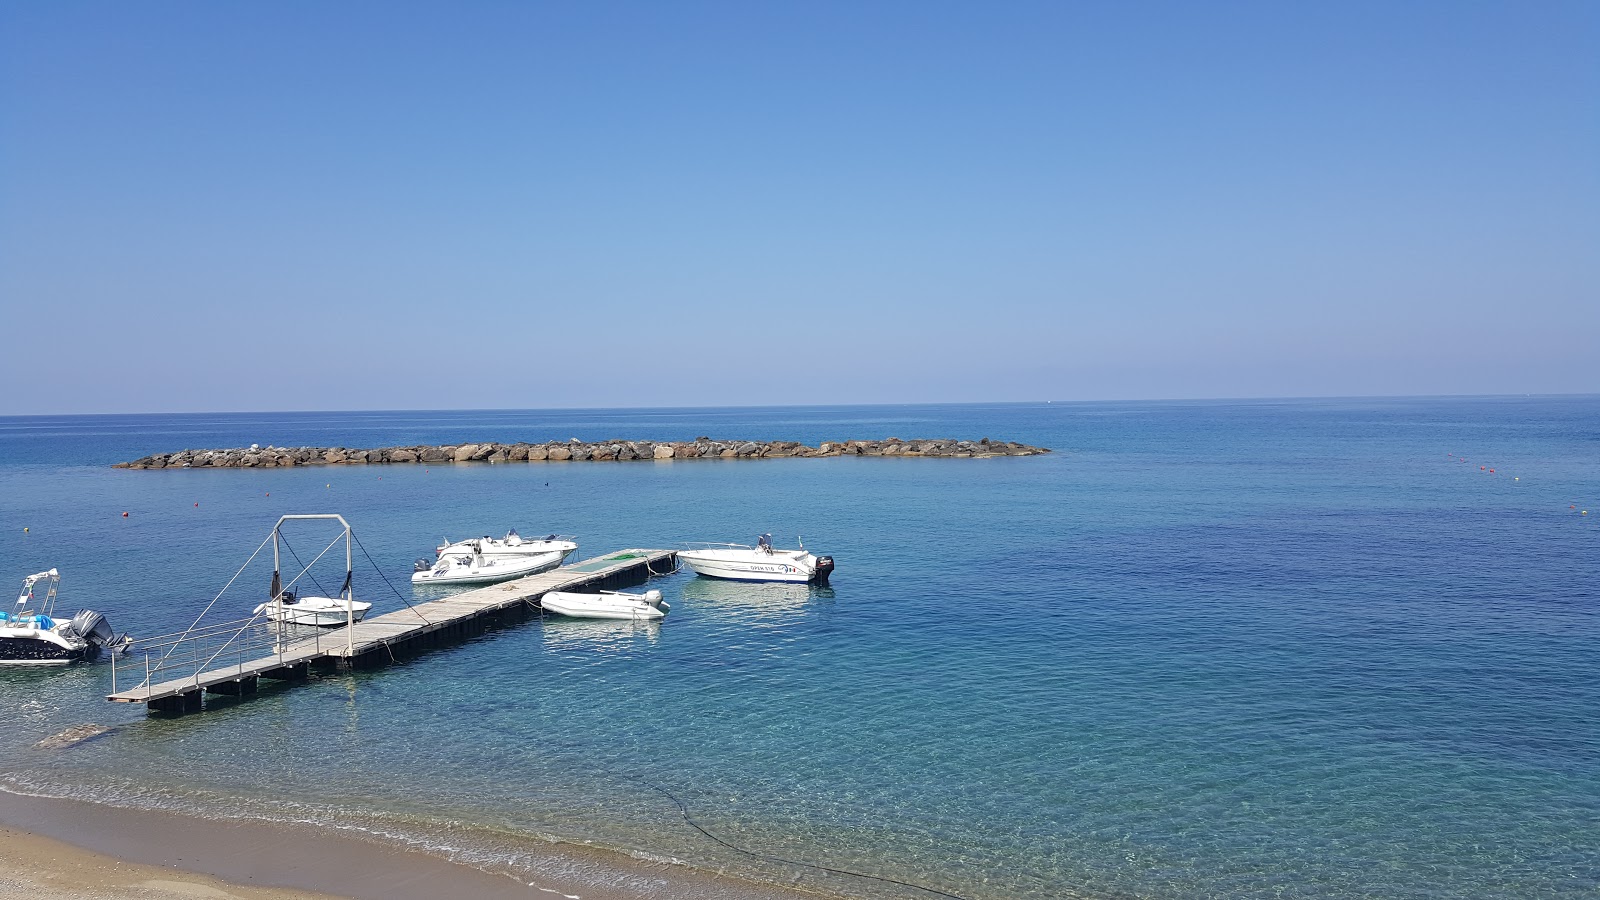 Foto av Spiaggia Diamante med brunsand yta